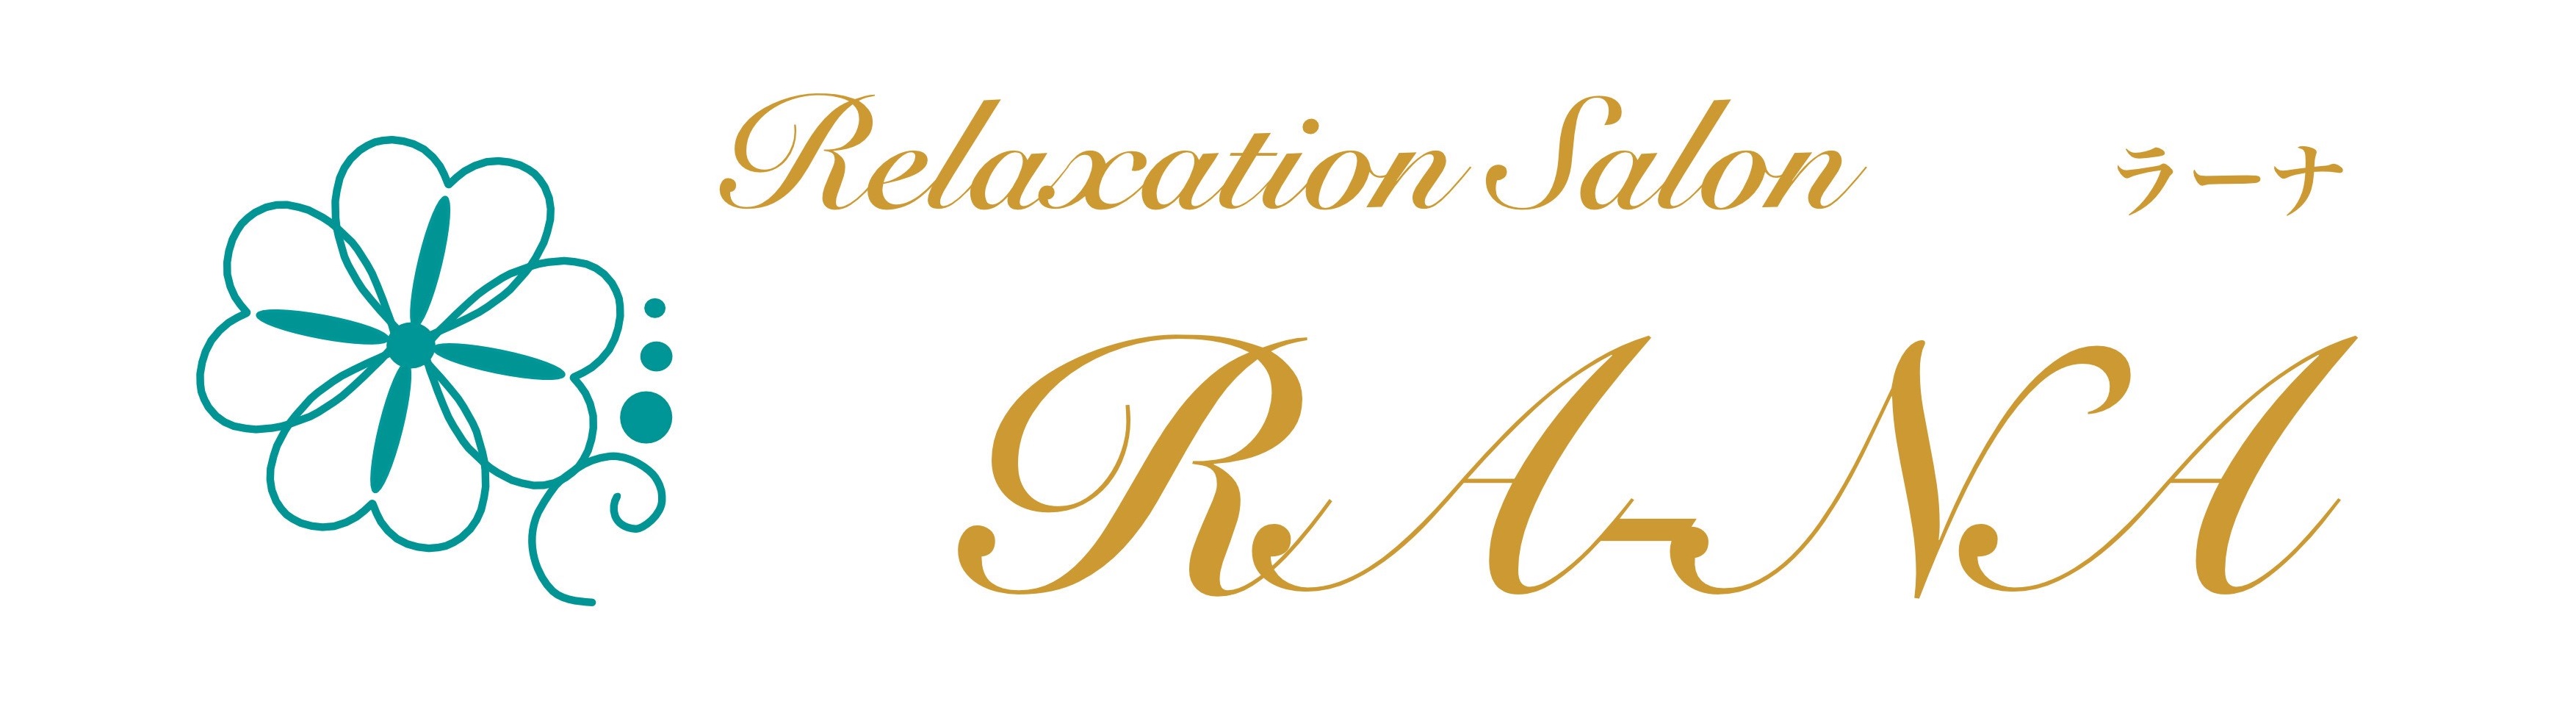 Relaxation Salon RA-NA